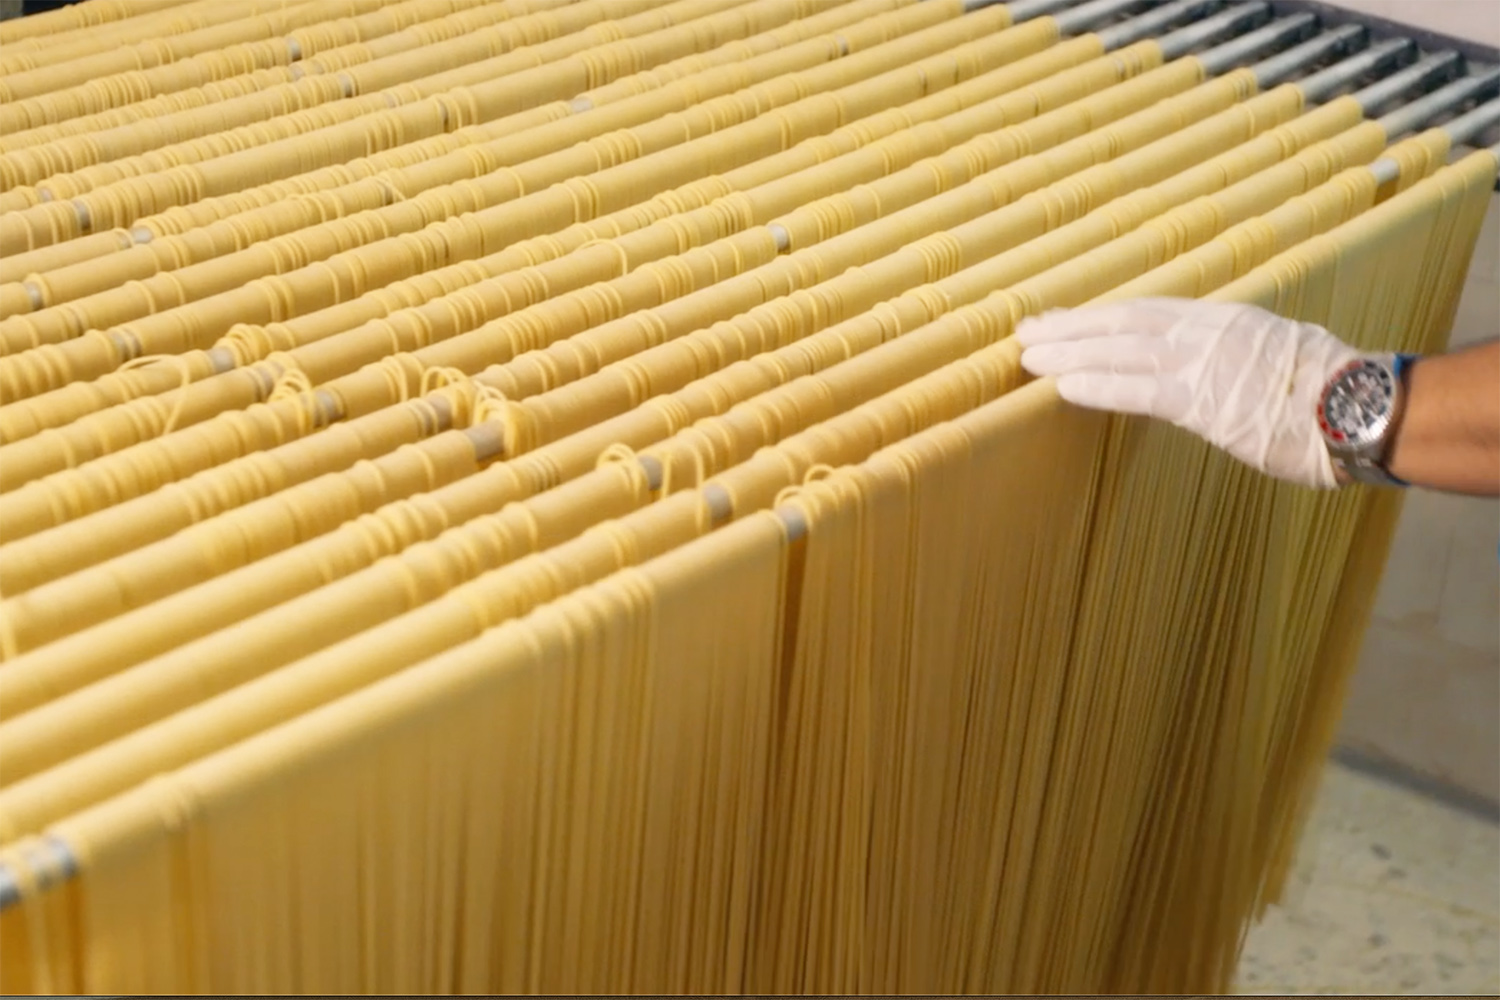 setaro long pasta